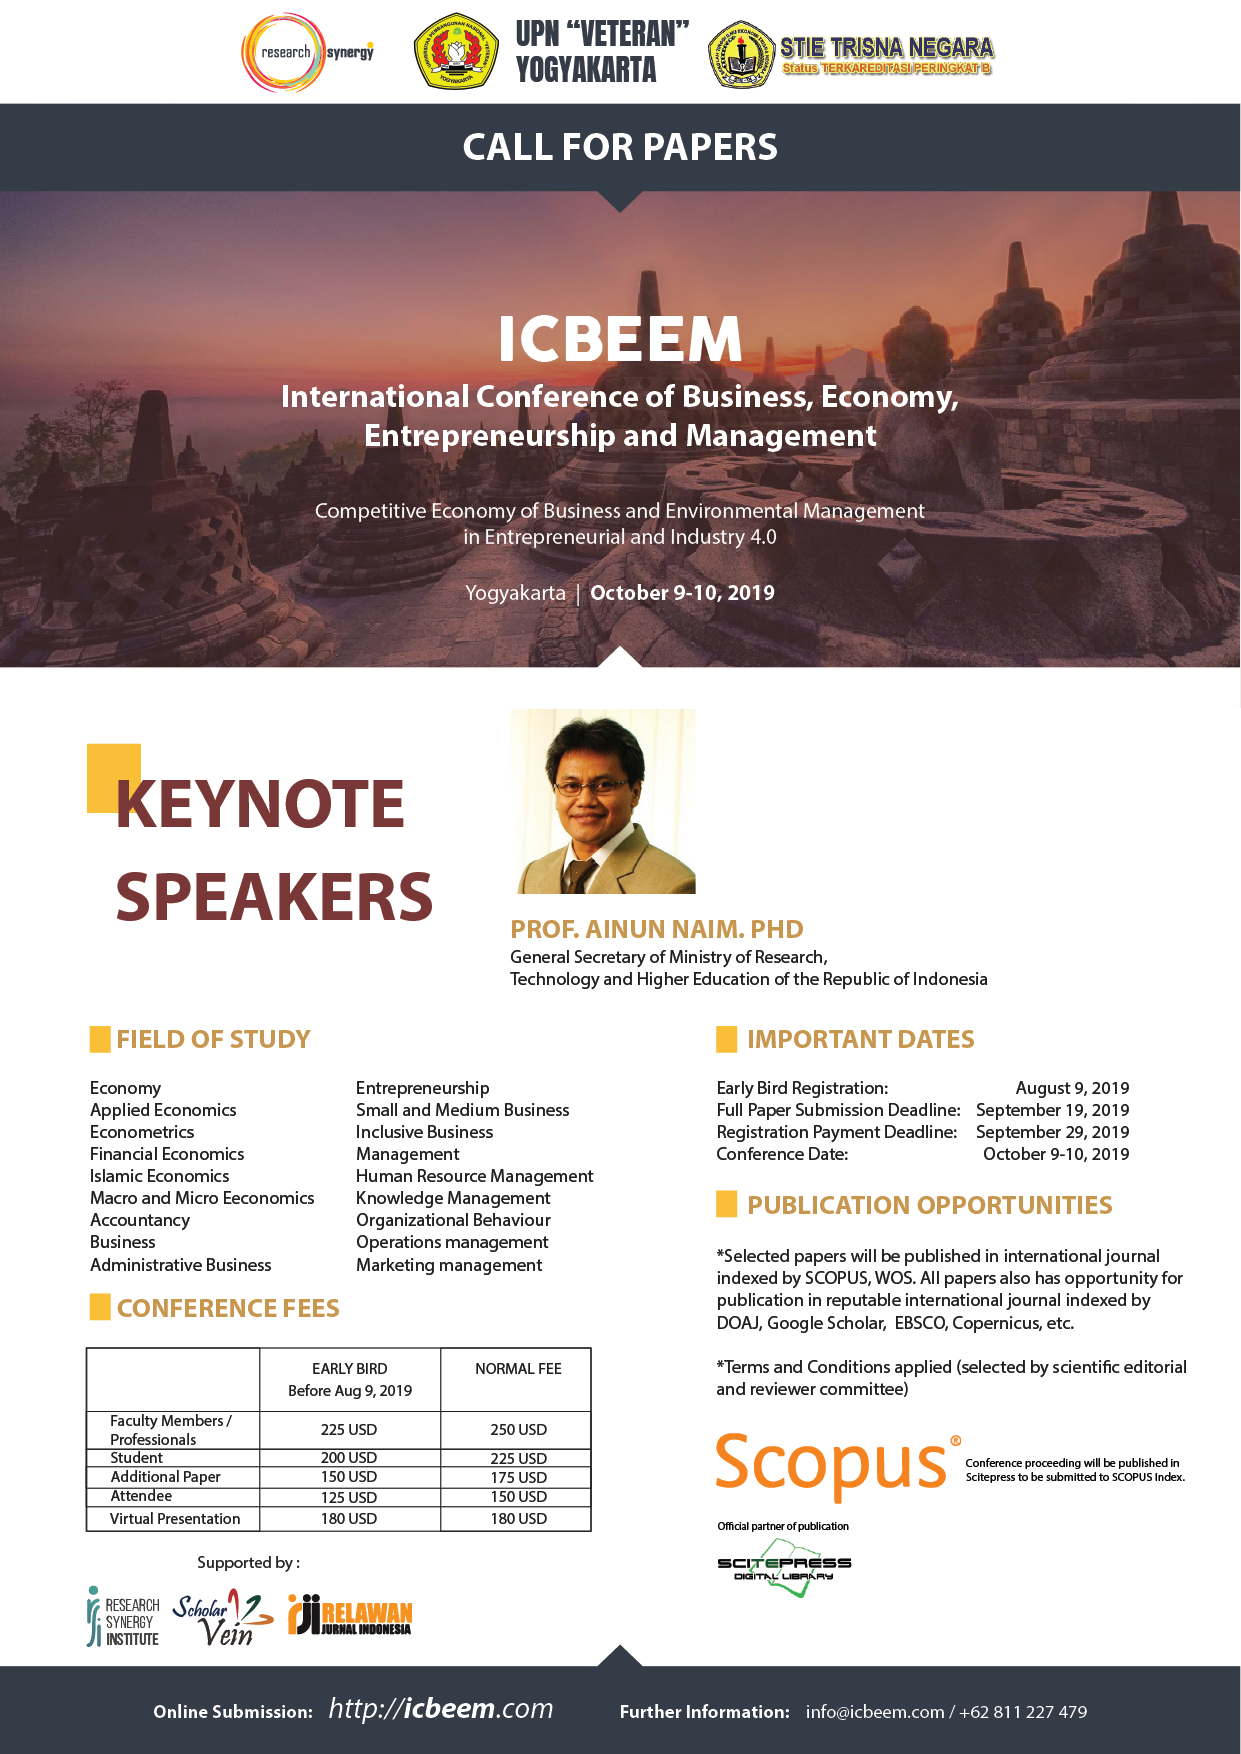 International Conference of Business, Economy, Entrepreneurship and Management (ICBEEM)